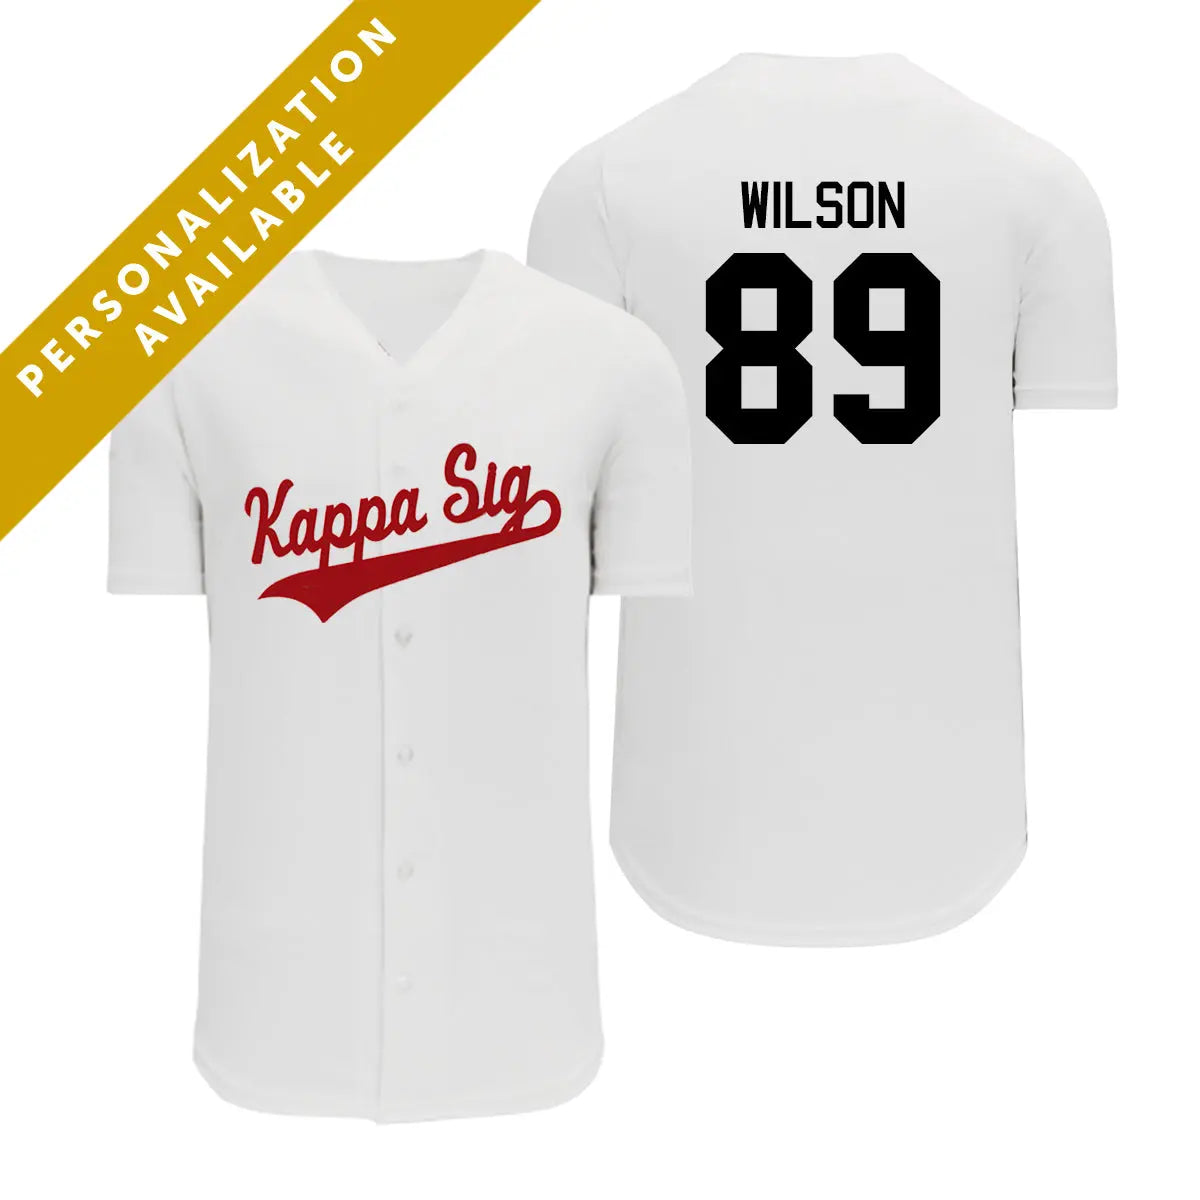 Kappa Sig Personalized White Mesh Baseball Jersey - Kappa Sigma Official Store